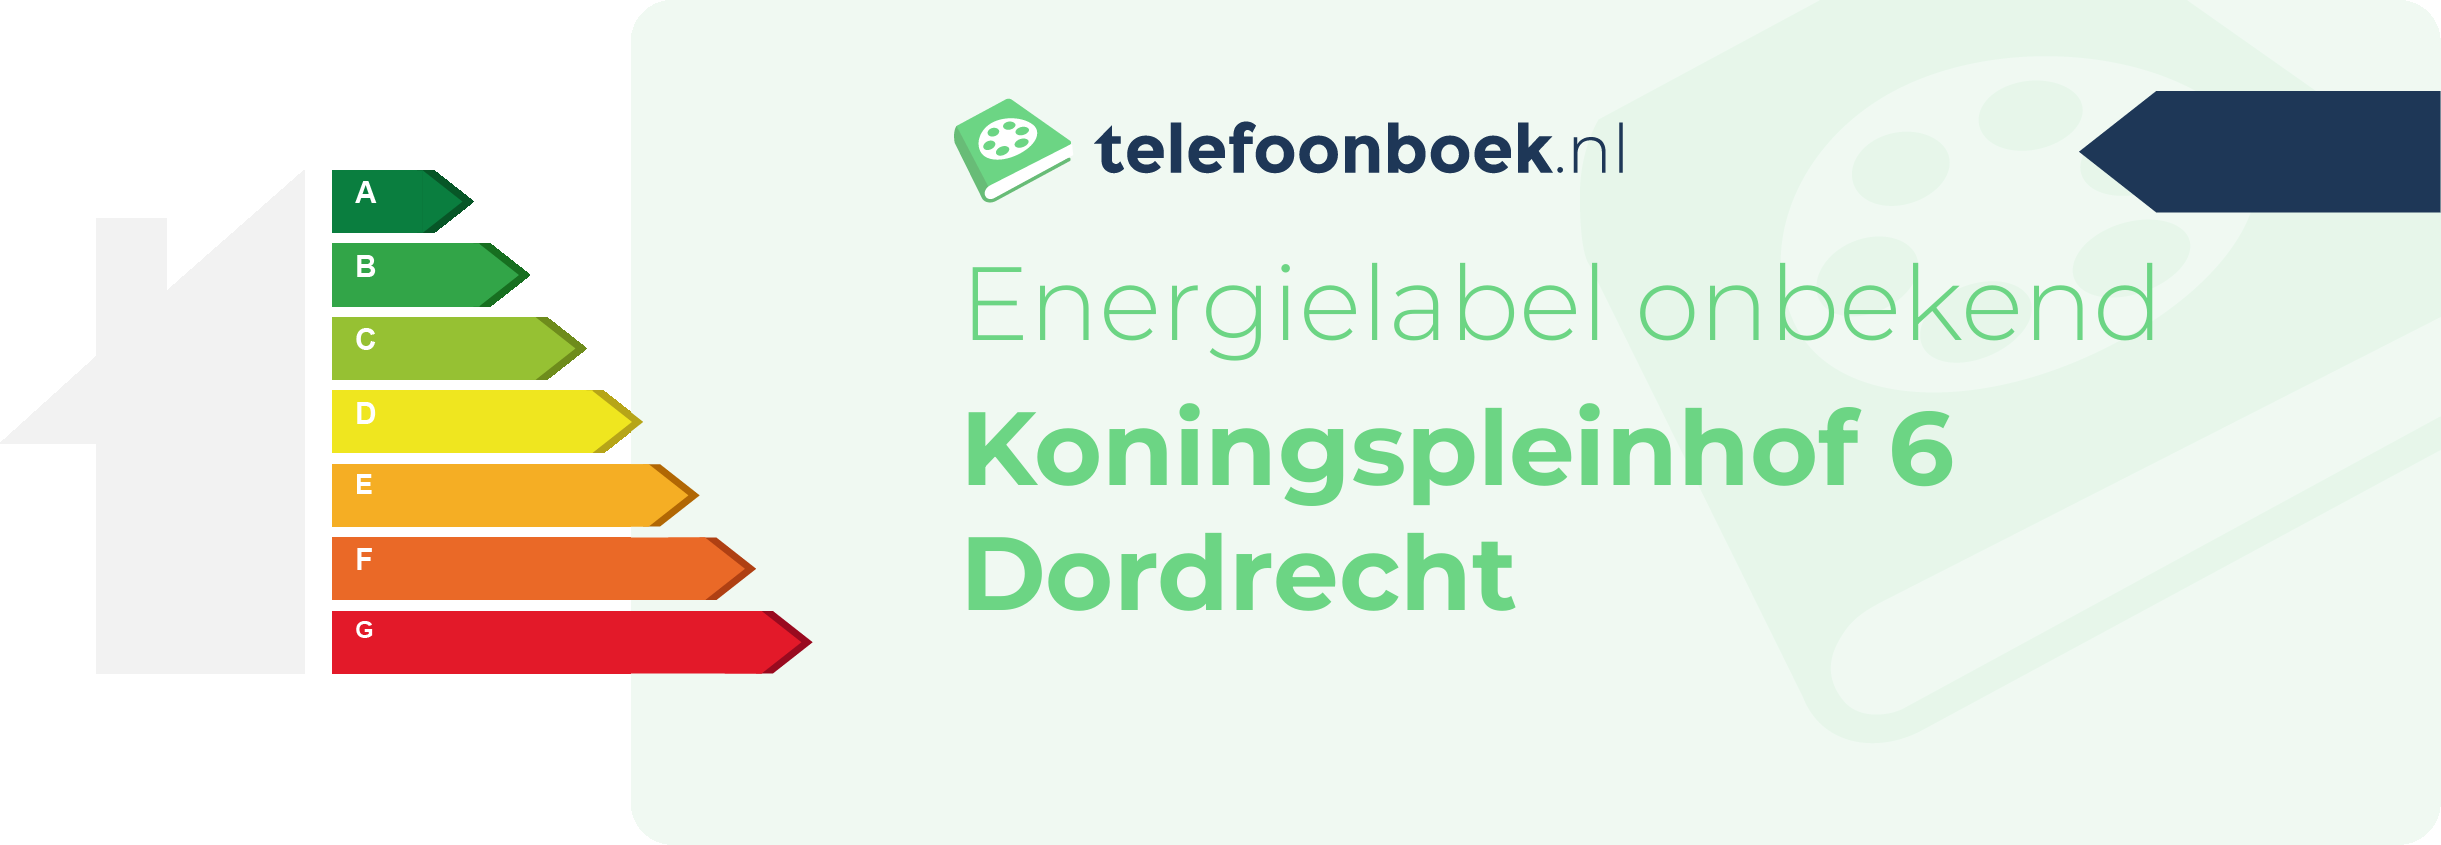 Energielabel Koningspleinhof 6 Dordrecht